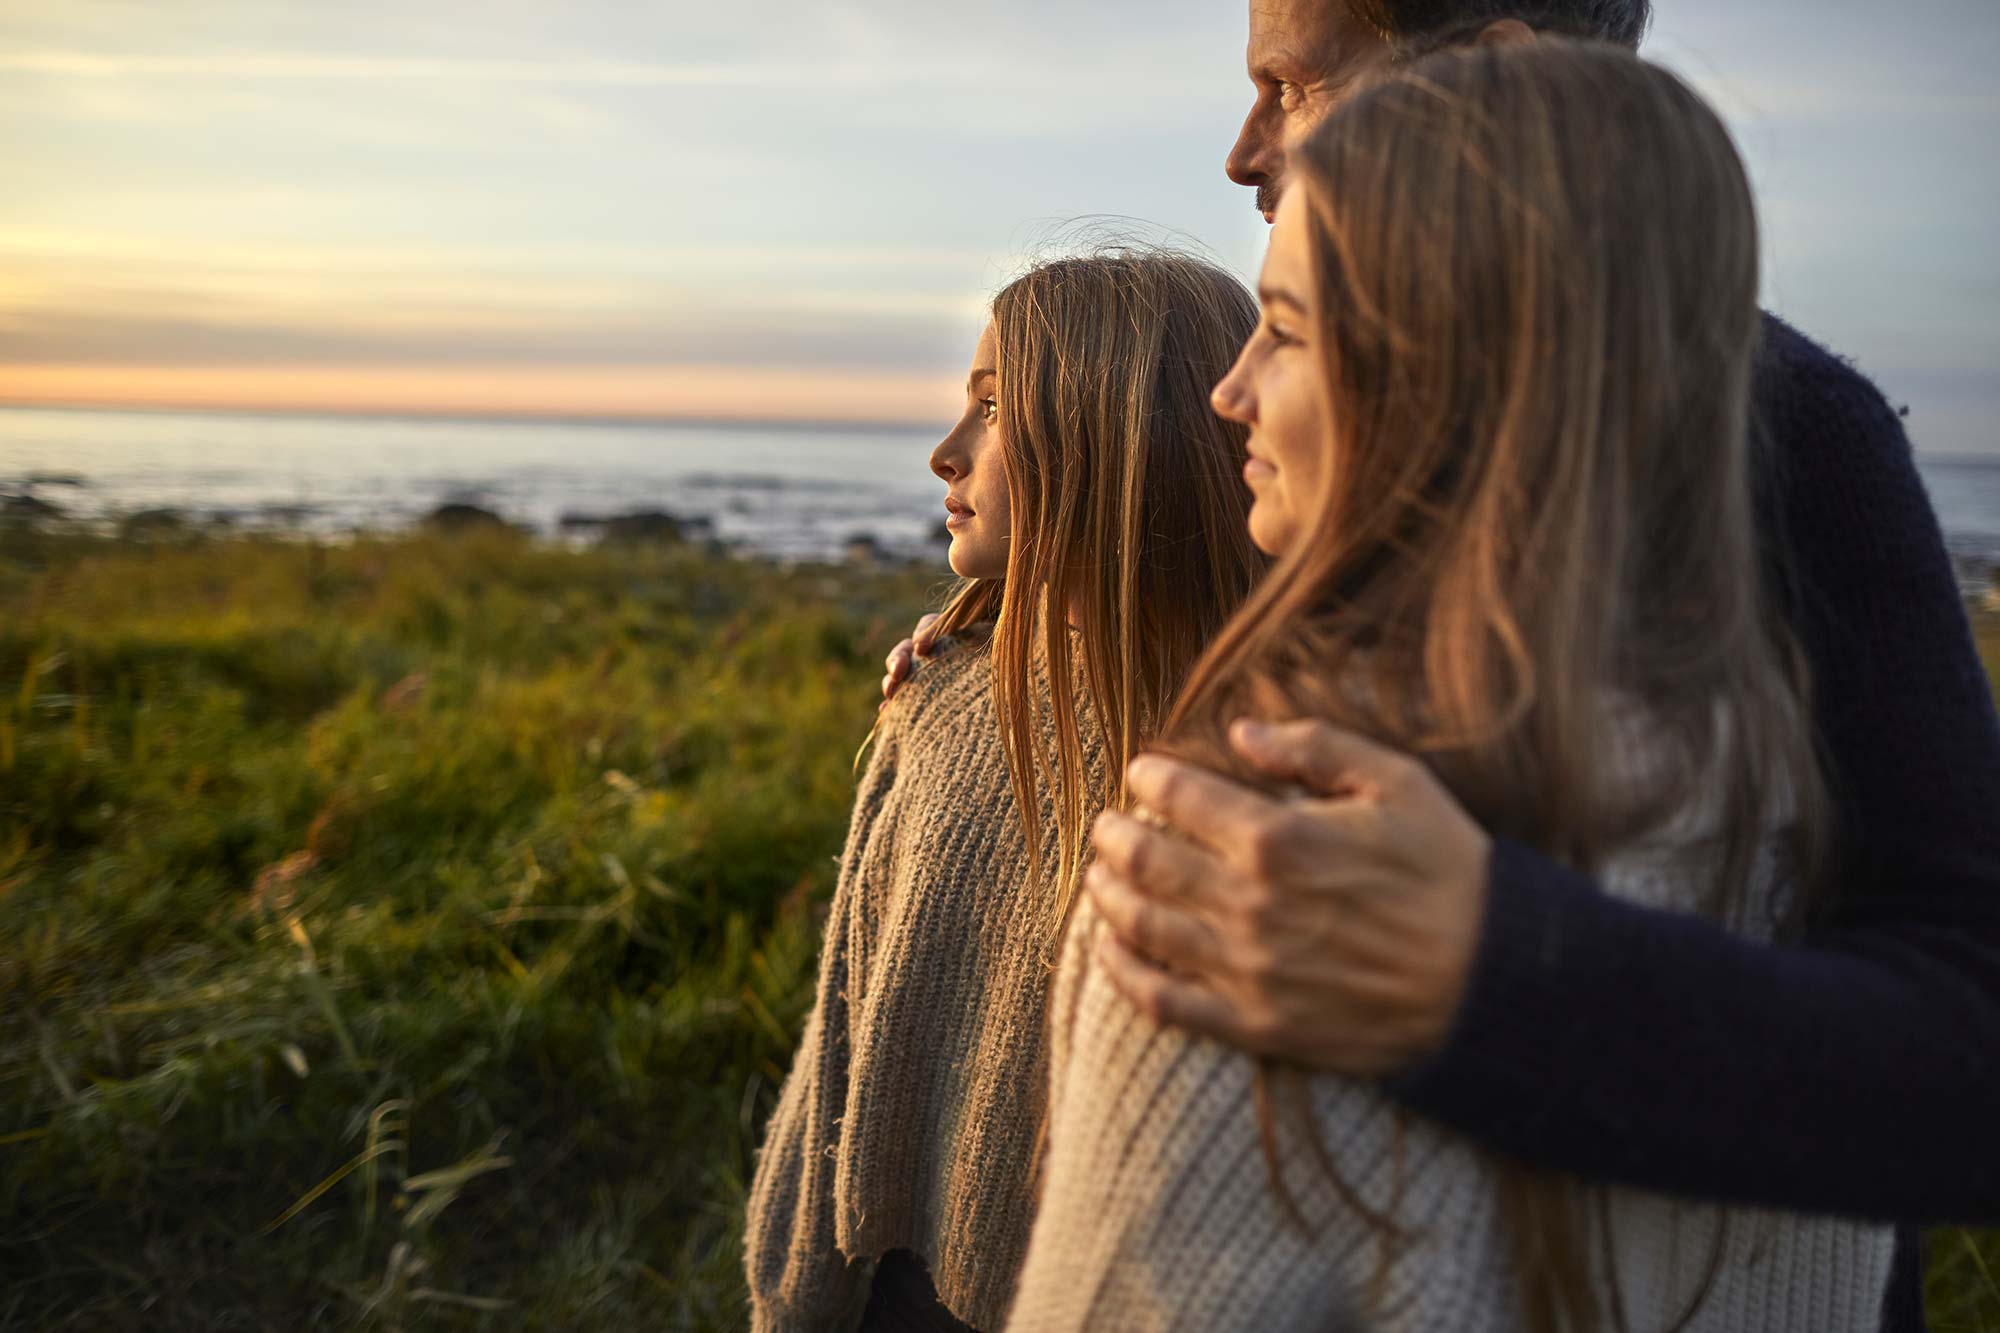 Tre personer står nära varandra och tittar ut mot ett hav där solen går ner.